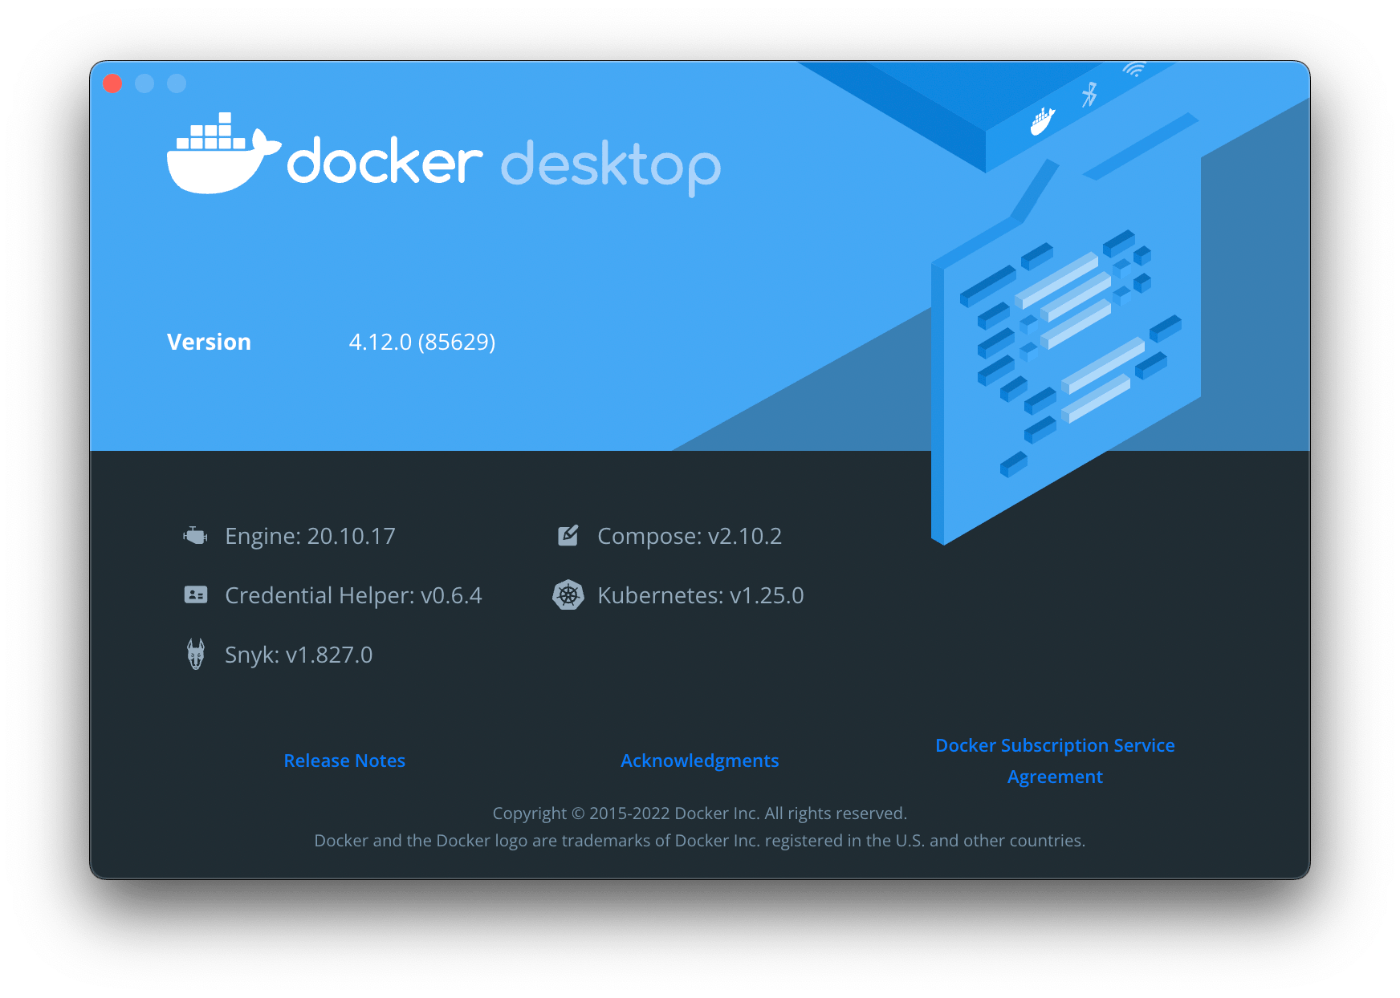 Docker Desktopのバージョンは4.12.0